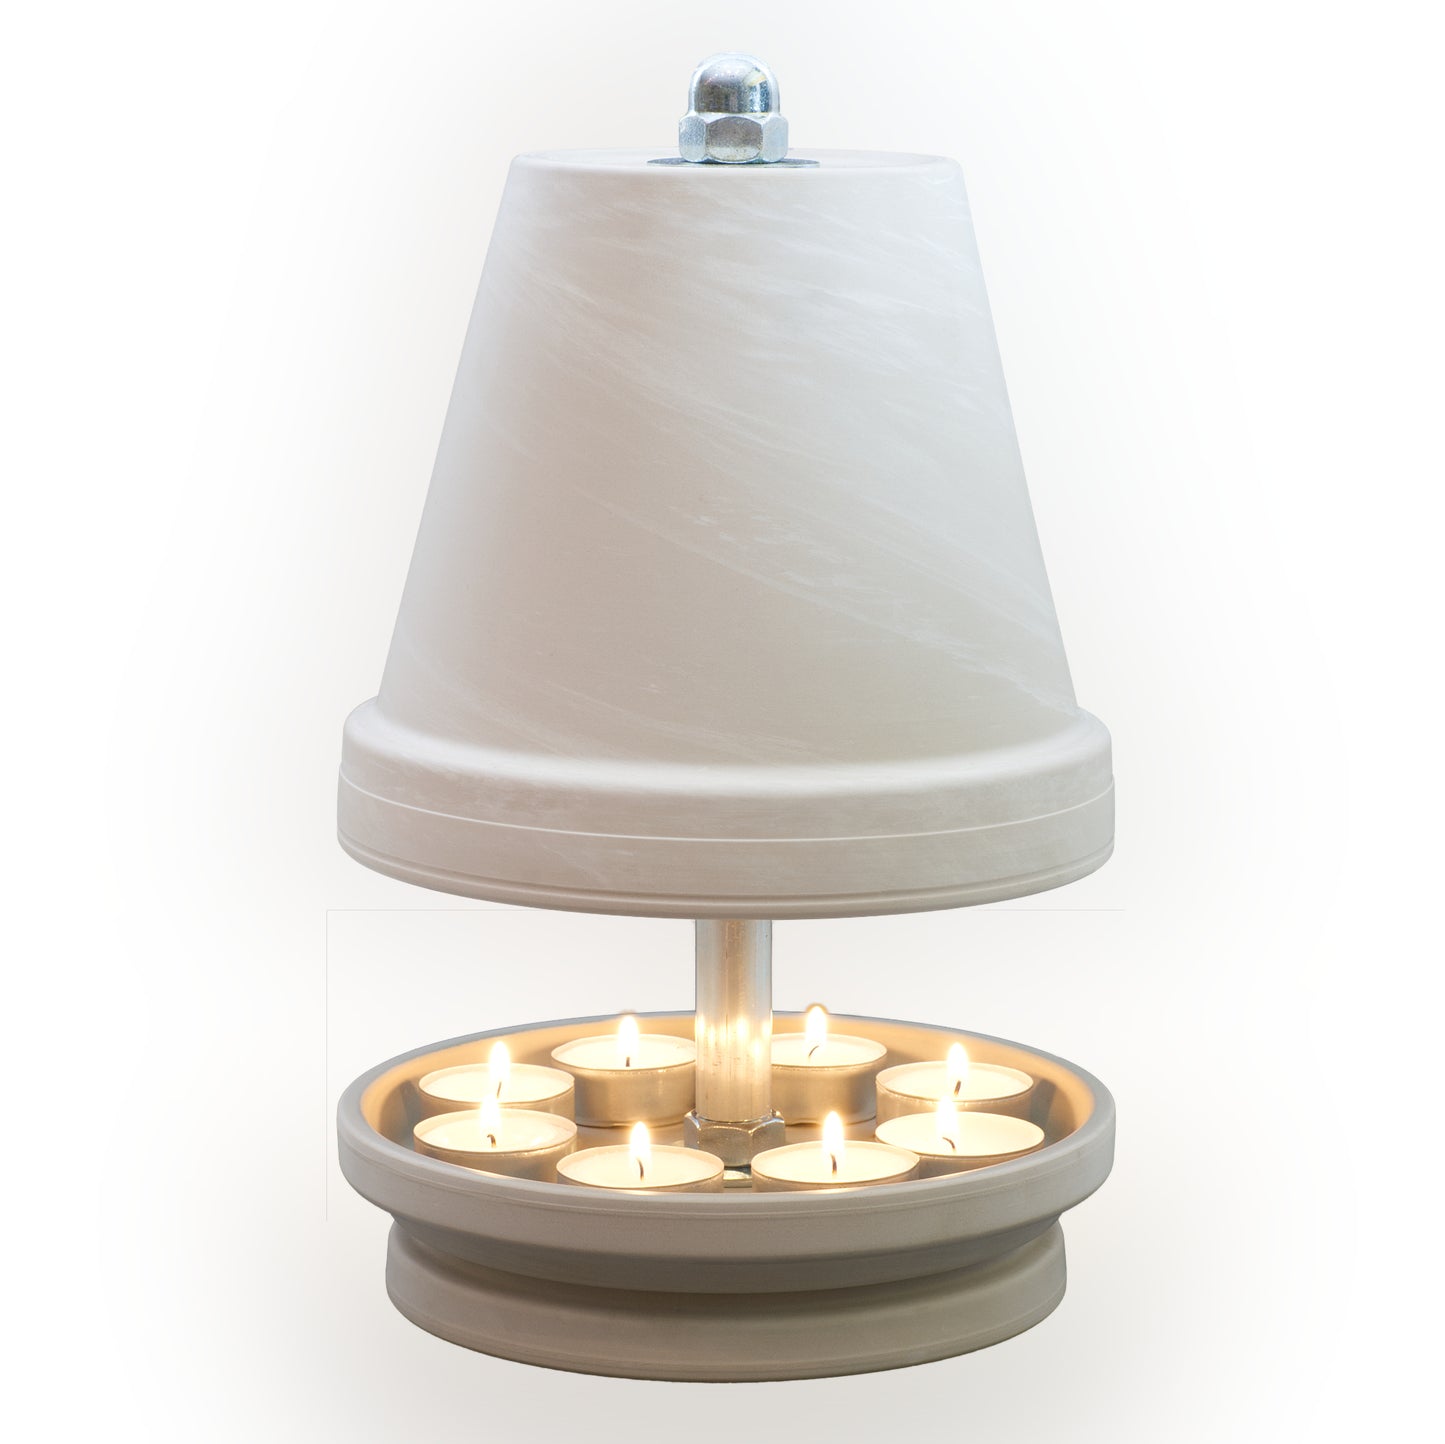 HP-TLO-NTS-White, Teelichtofen/Teelichtlampe, aus weißem Granit gefertigt, mit einer zarten Marmorierung! Im Komplett-Set GEWALTIG